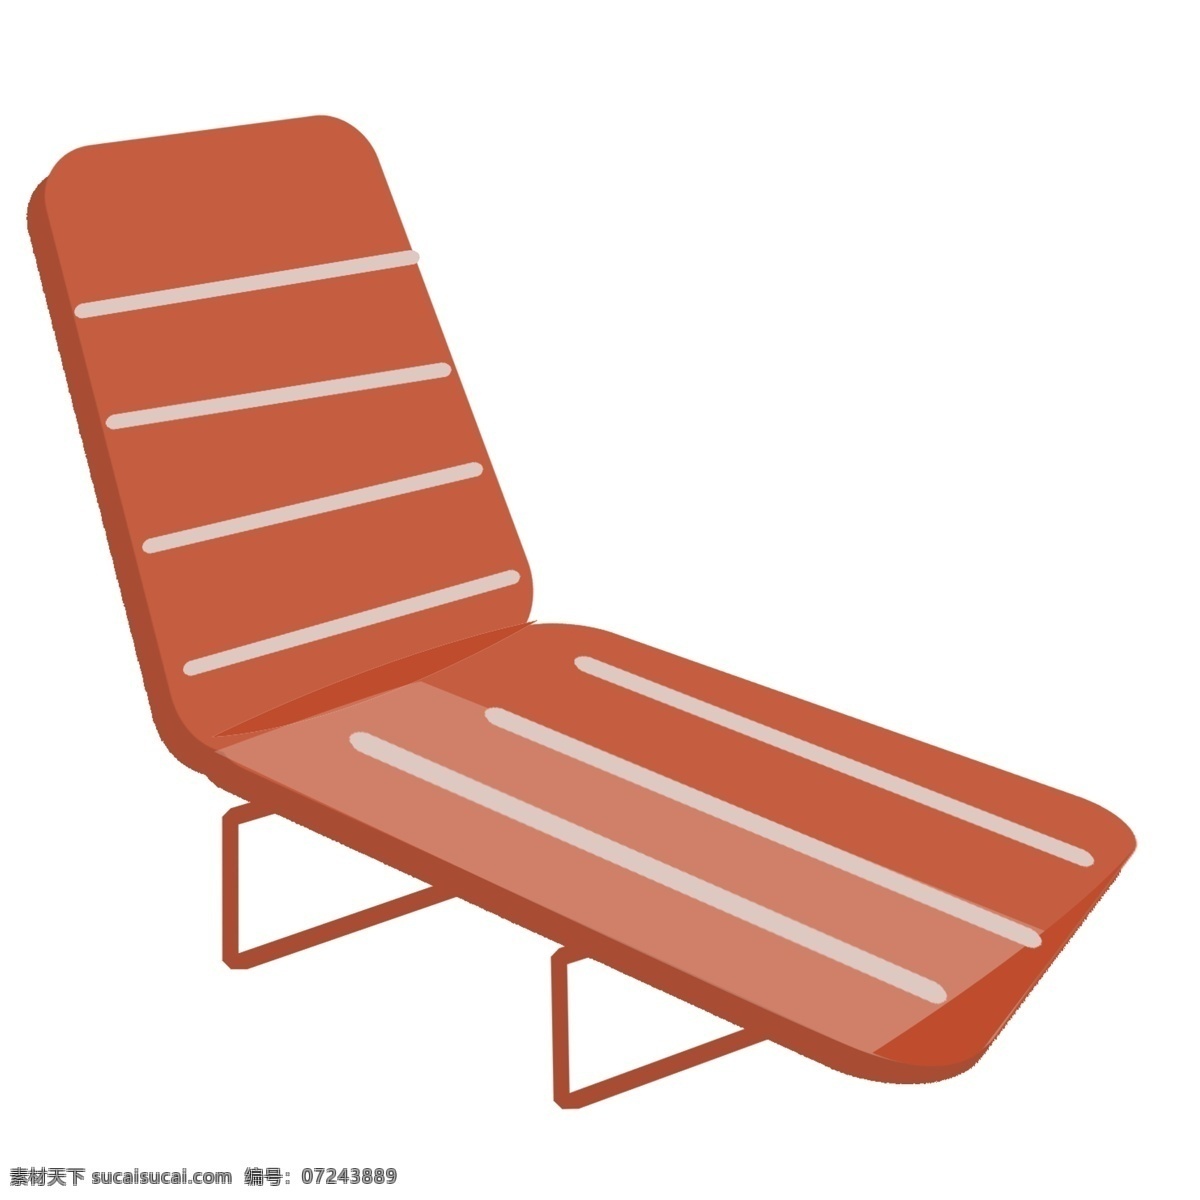 棕色卡通躺椅 躺椅 椅子 棕色